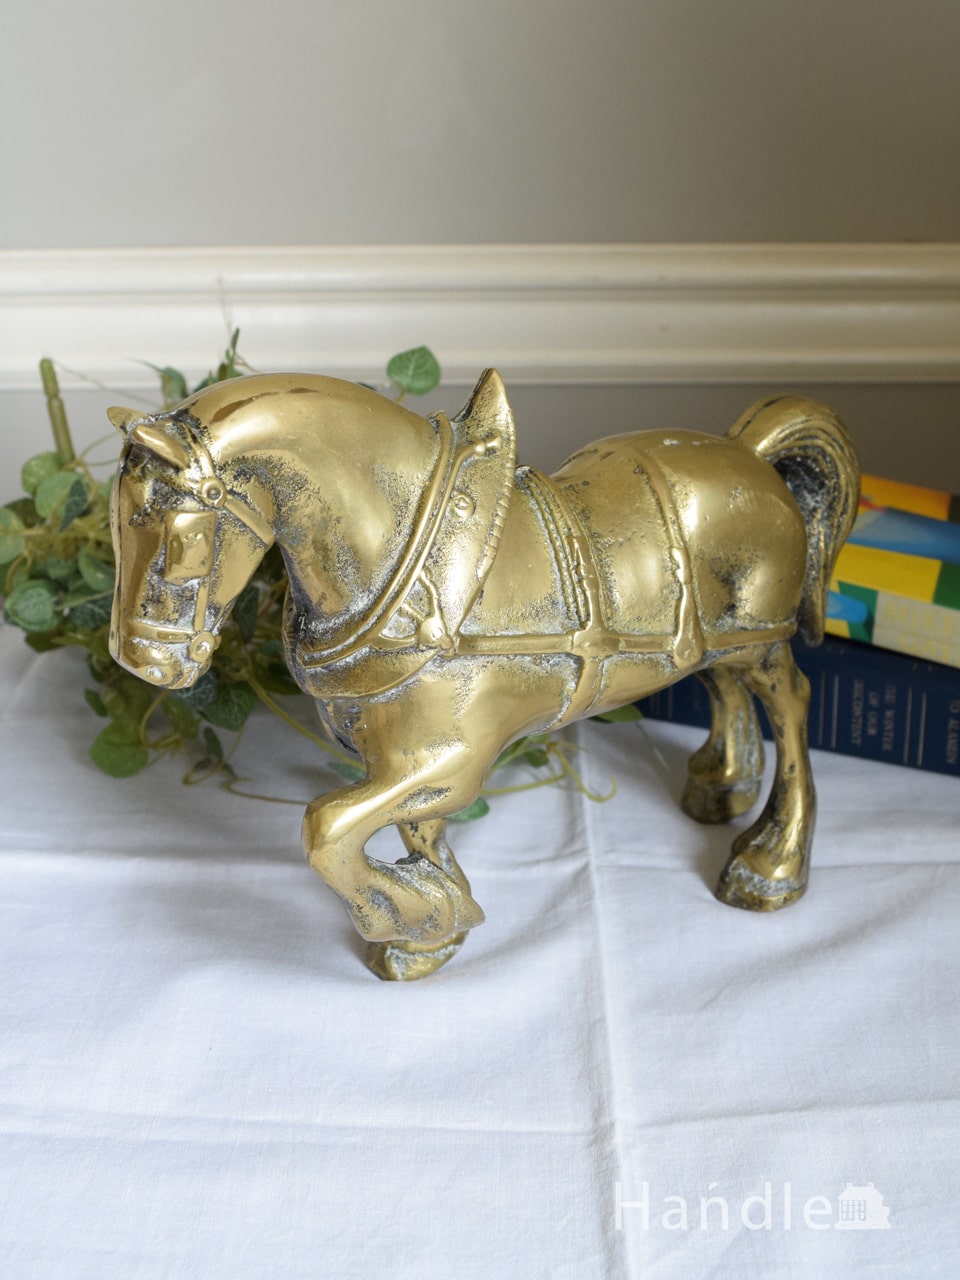 英国アンティークの真鍮製のオブジェ、イギリスで見つけた馬のブラス